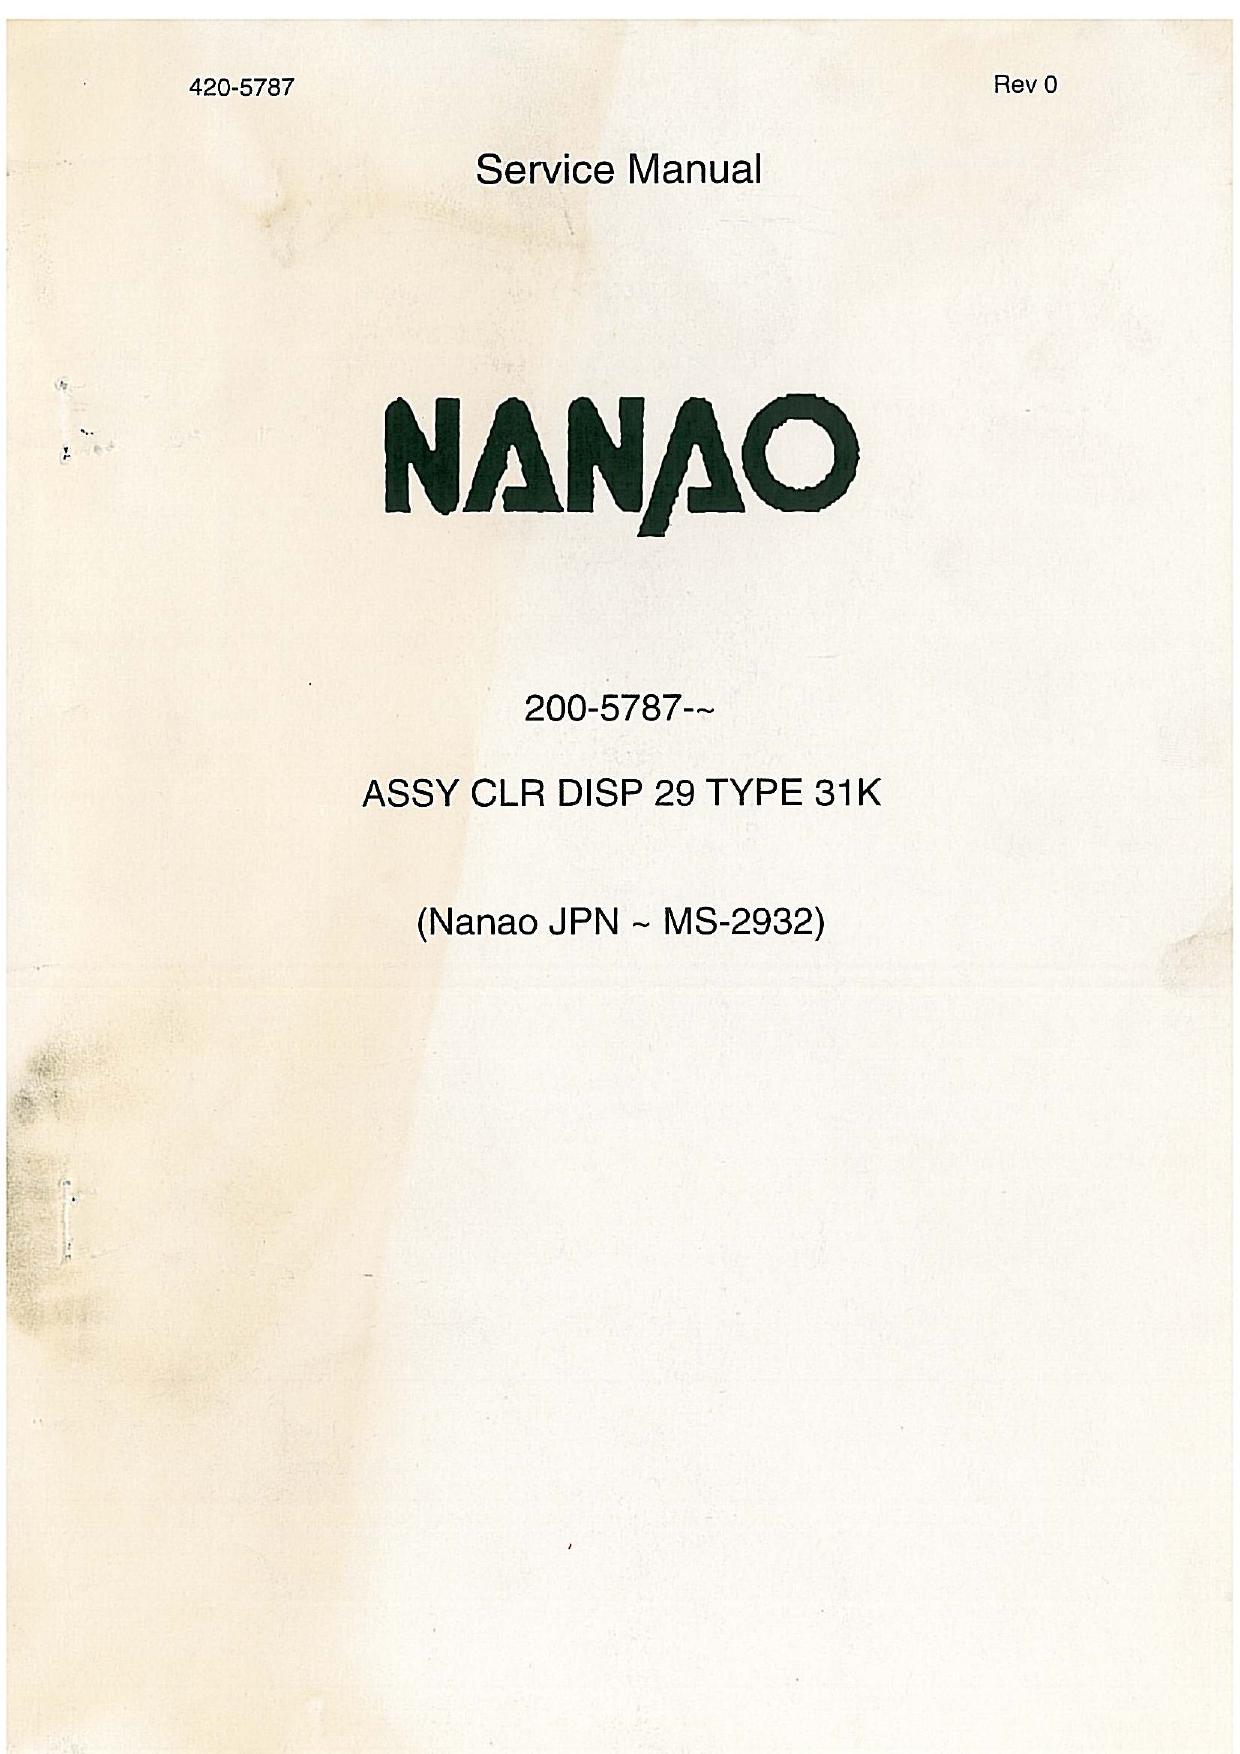 Nanao MS-2932